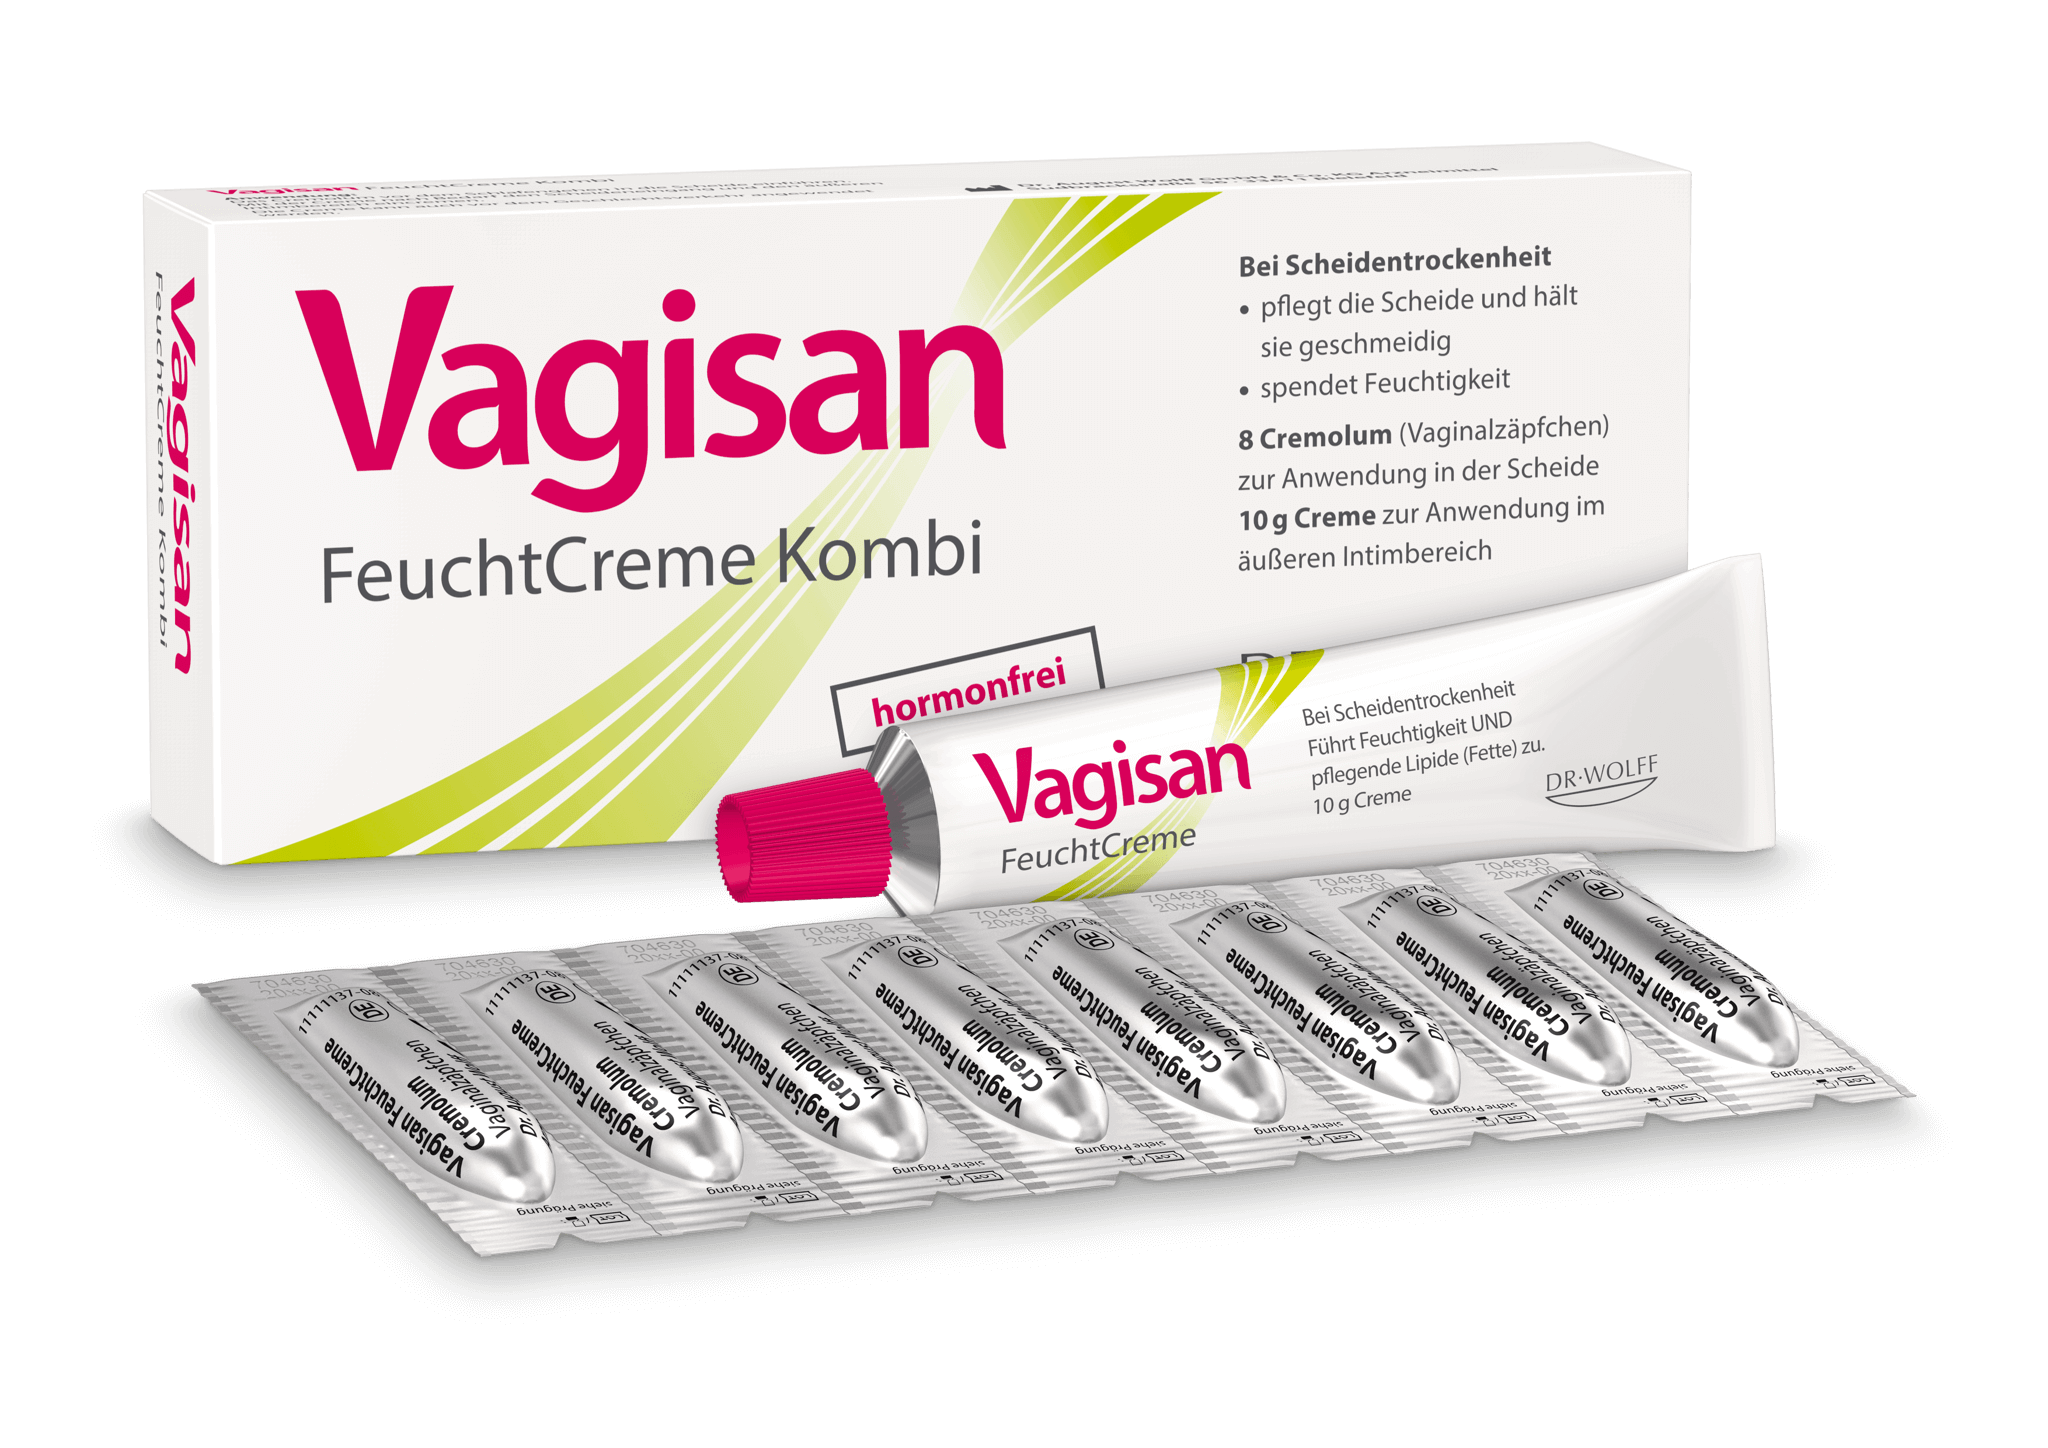 Wie sieht eine feuchte vagina aus